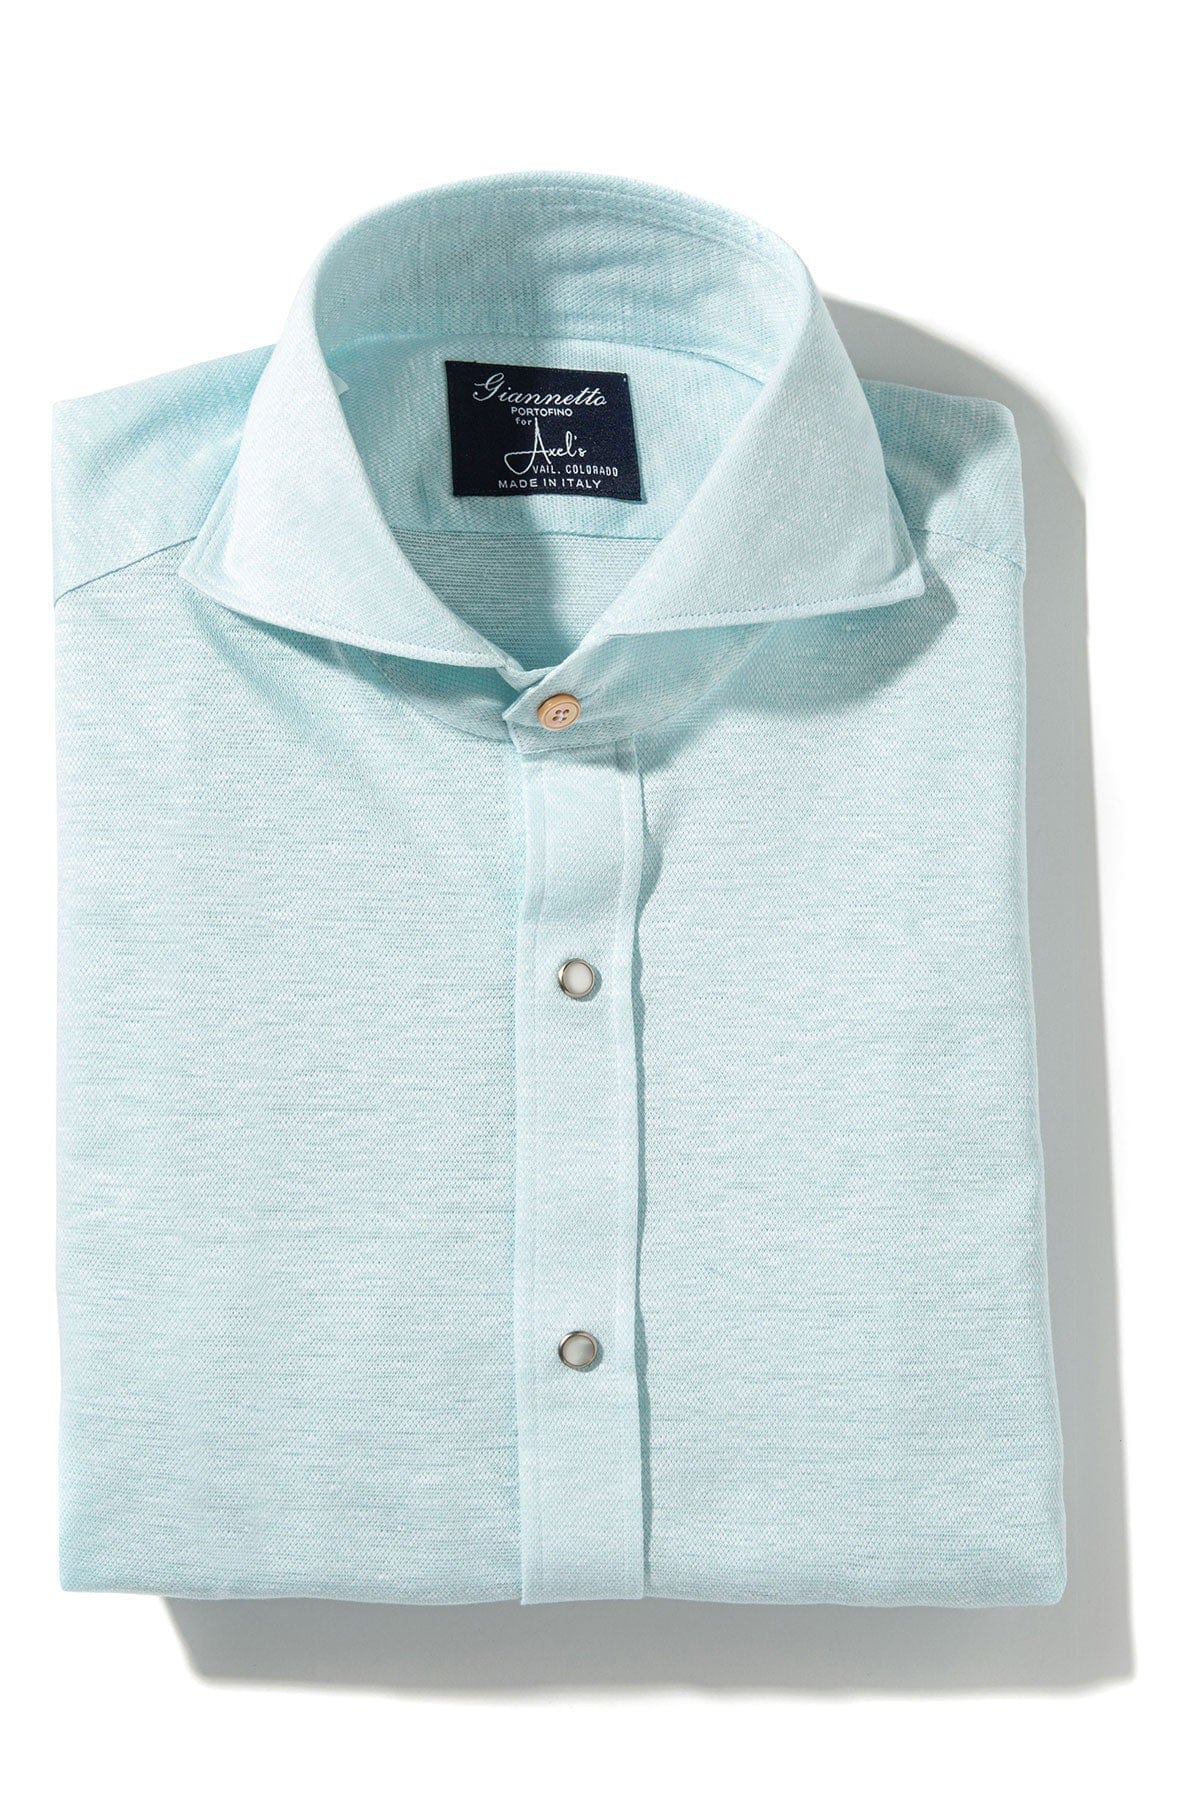 Schwinn Cotton Linen Shirt in Lt. Blue - AXEL'S